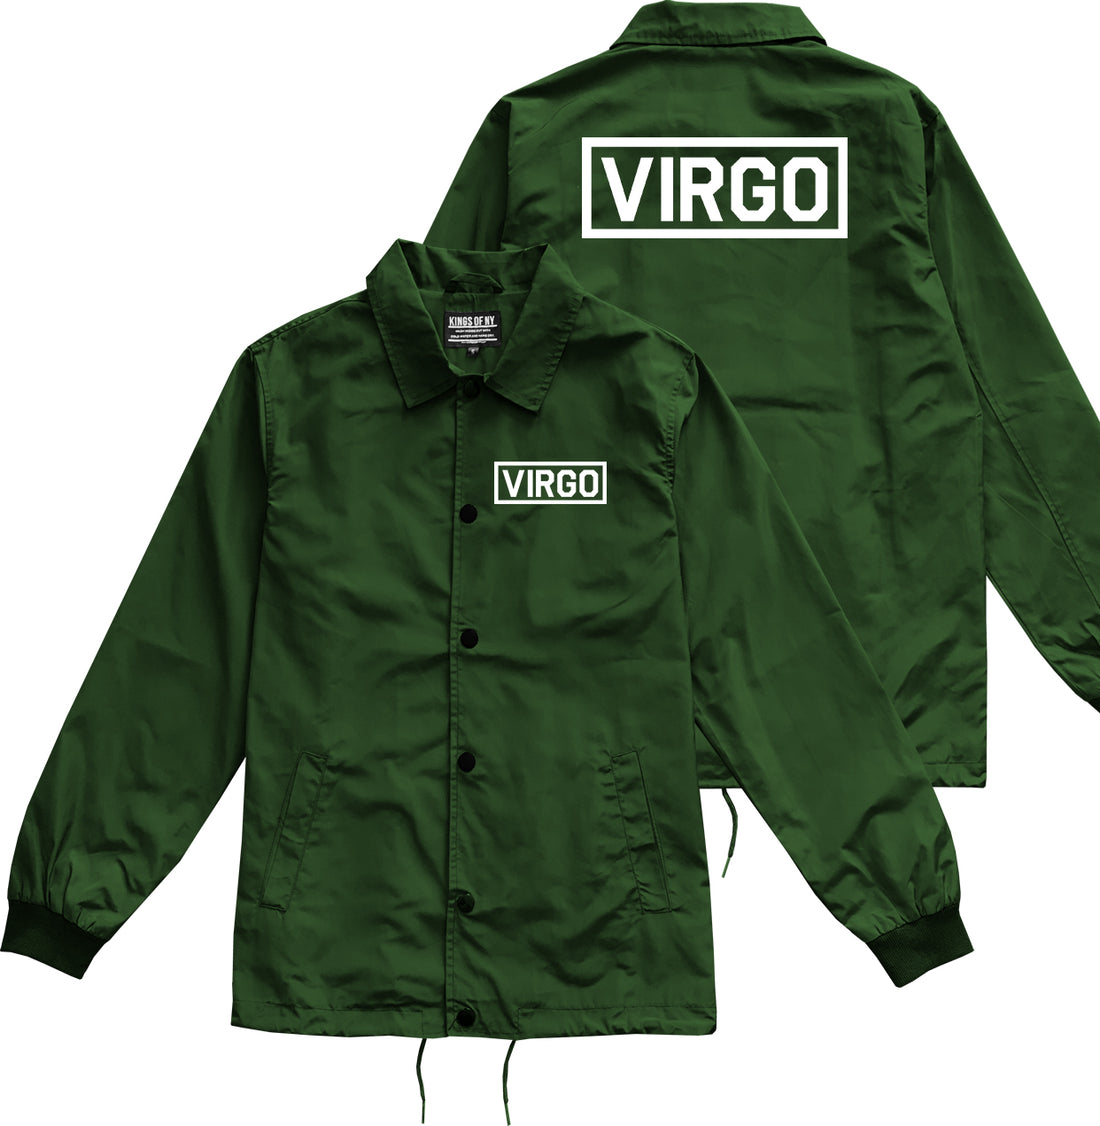 Virgo Horoscope Sign Mens Green Coaches Jacket by KINGS OF NY